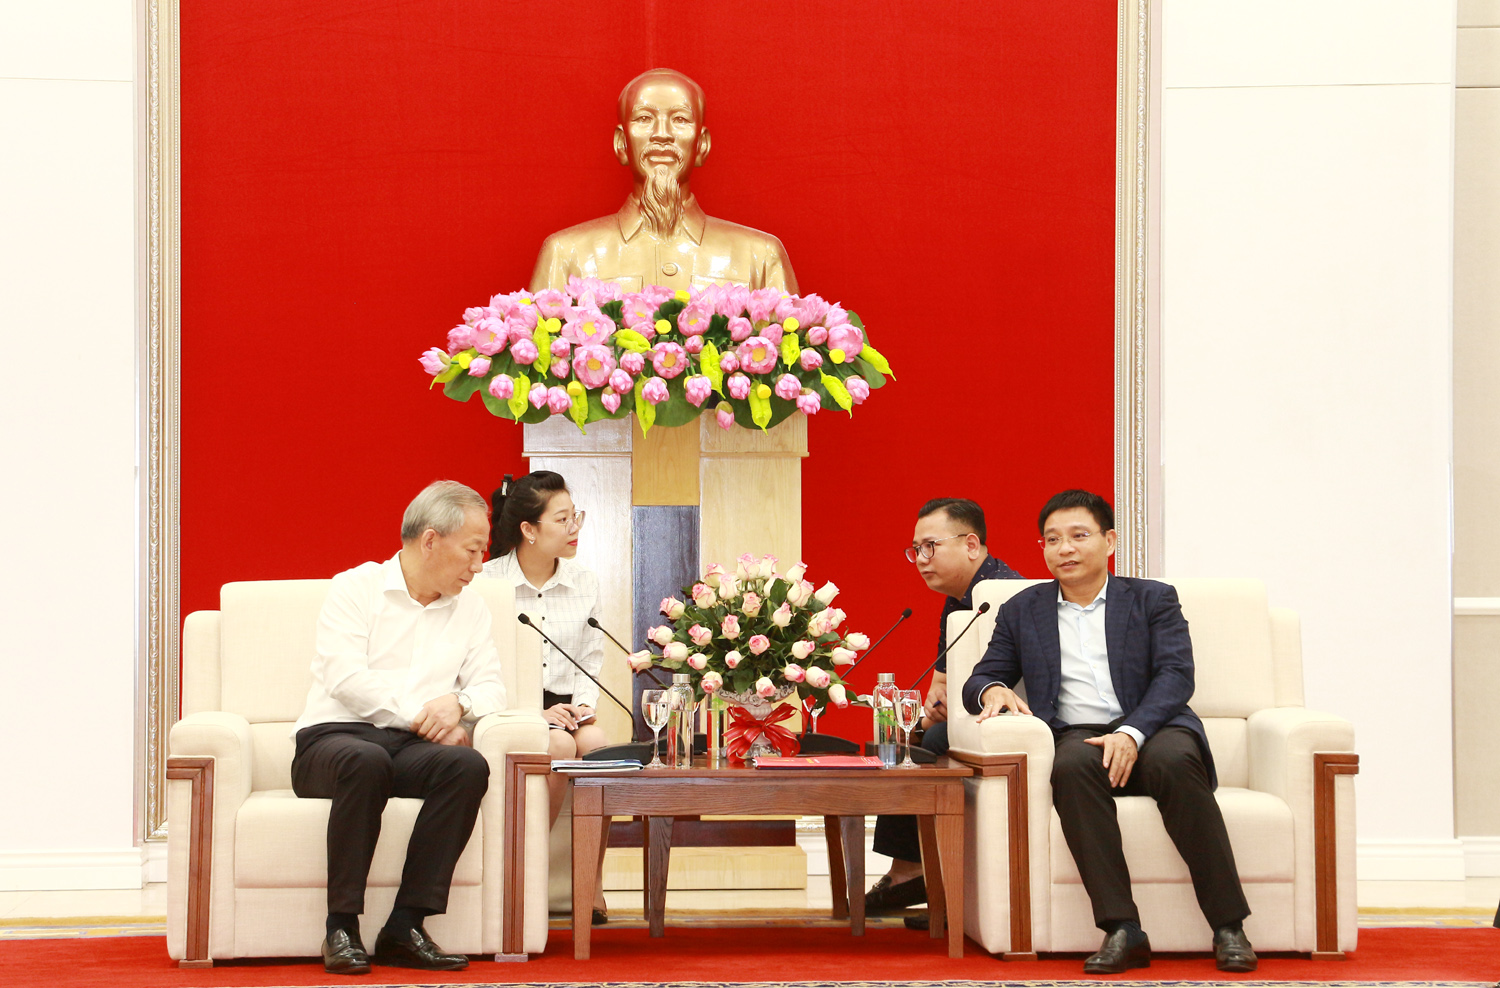 Đồng chí Nguyễn Văn Thắng, Phó Bí thư Tỉnh ủy, Chủ tịch UBND tỉnh, tiếp ông Nghiêm Giới Hòa, người sáng lập Tập đoàn Xây dựng Thái Bình Dương.